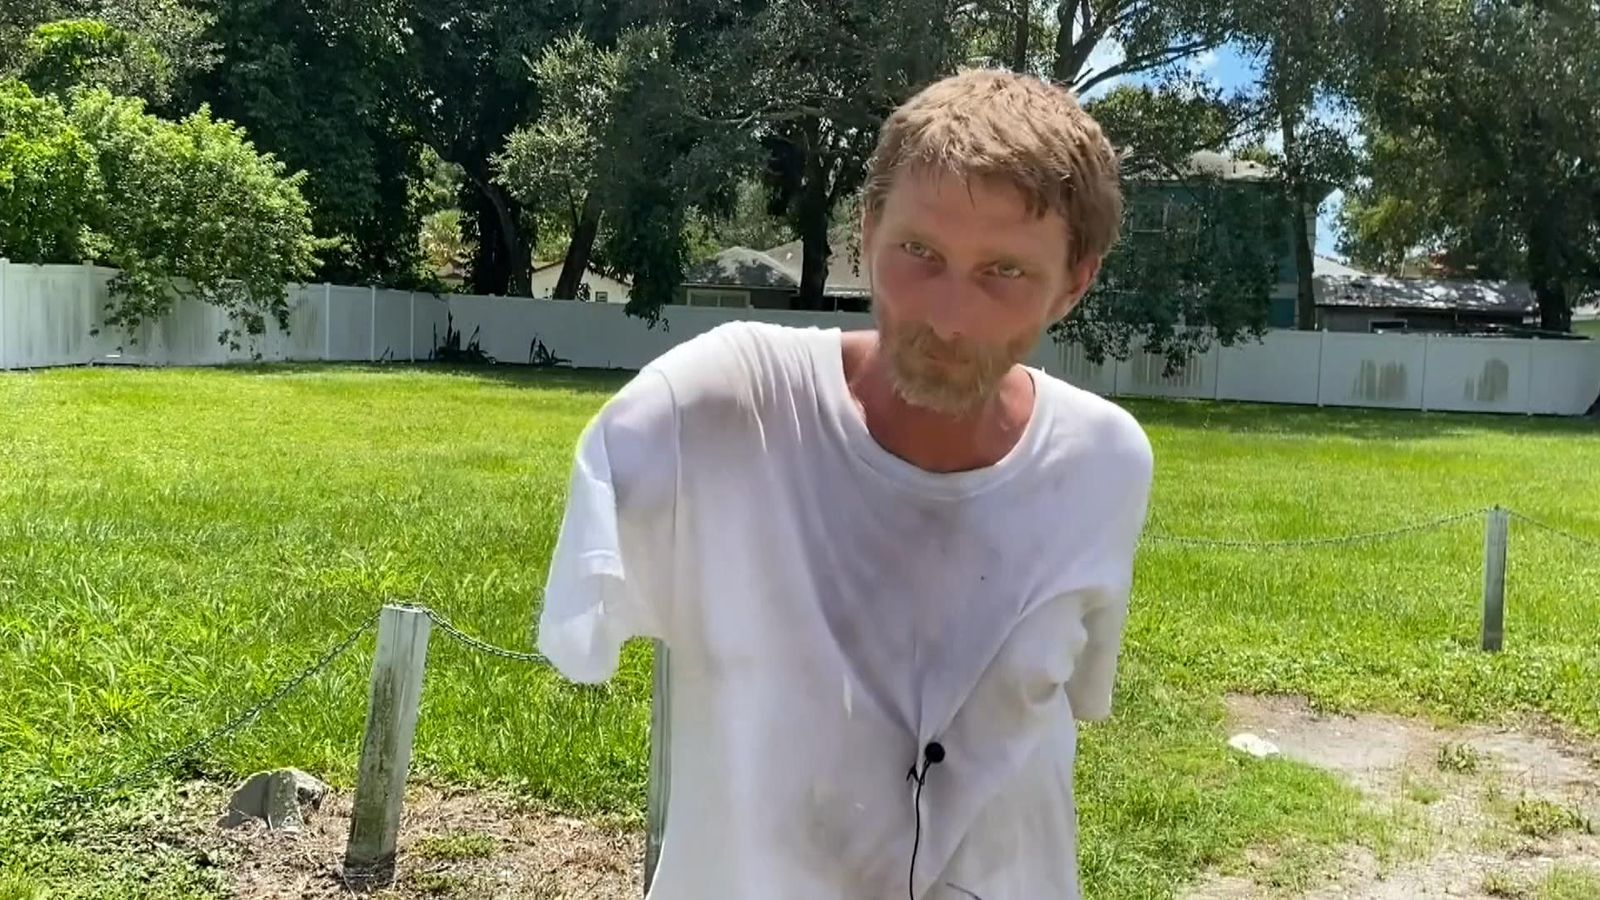 Mężczyzna z Florydy został ugryziony w ramię podczas ataku aligatora, zanim zaginął w lesie na trzy dni |  Wiadomości z USA